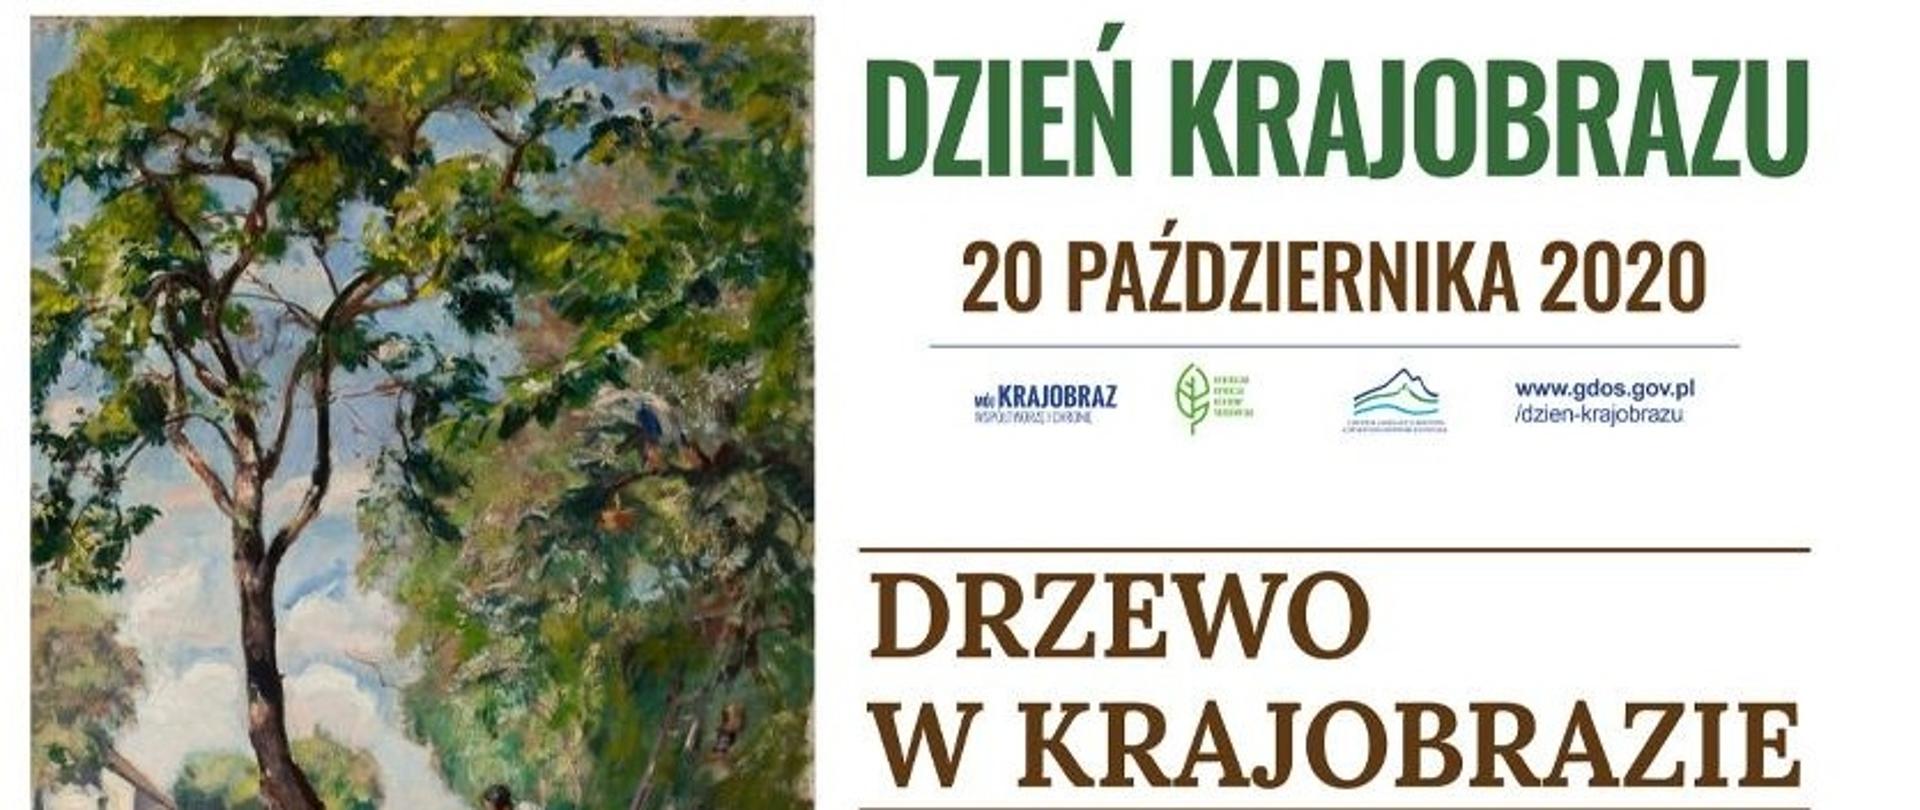 Plakat przedstawiający drzewo namalowane oraz dwie postacie. Znajduje się również napis drzewo w krajobrazie 20 października 2020 . Fotografie zamieszczono dzięki uprzejmości Muzeum Narodowego w Warszawie